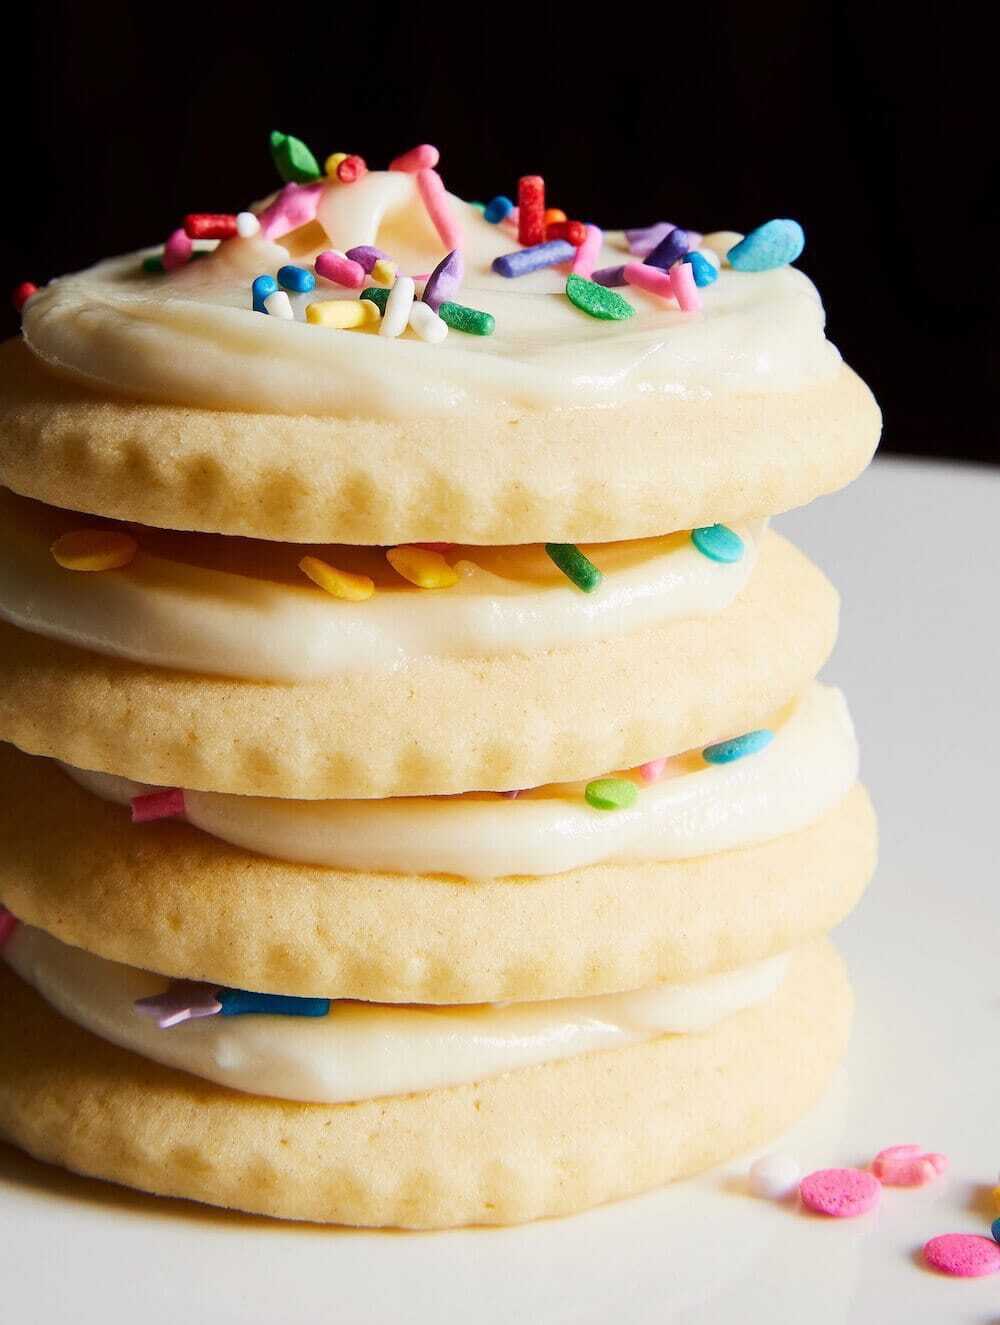  biscuits au sucre doux empilés avec des paillettes arc-en-ciel 